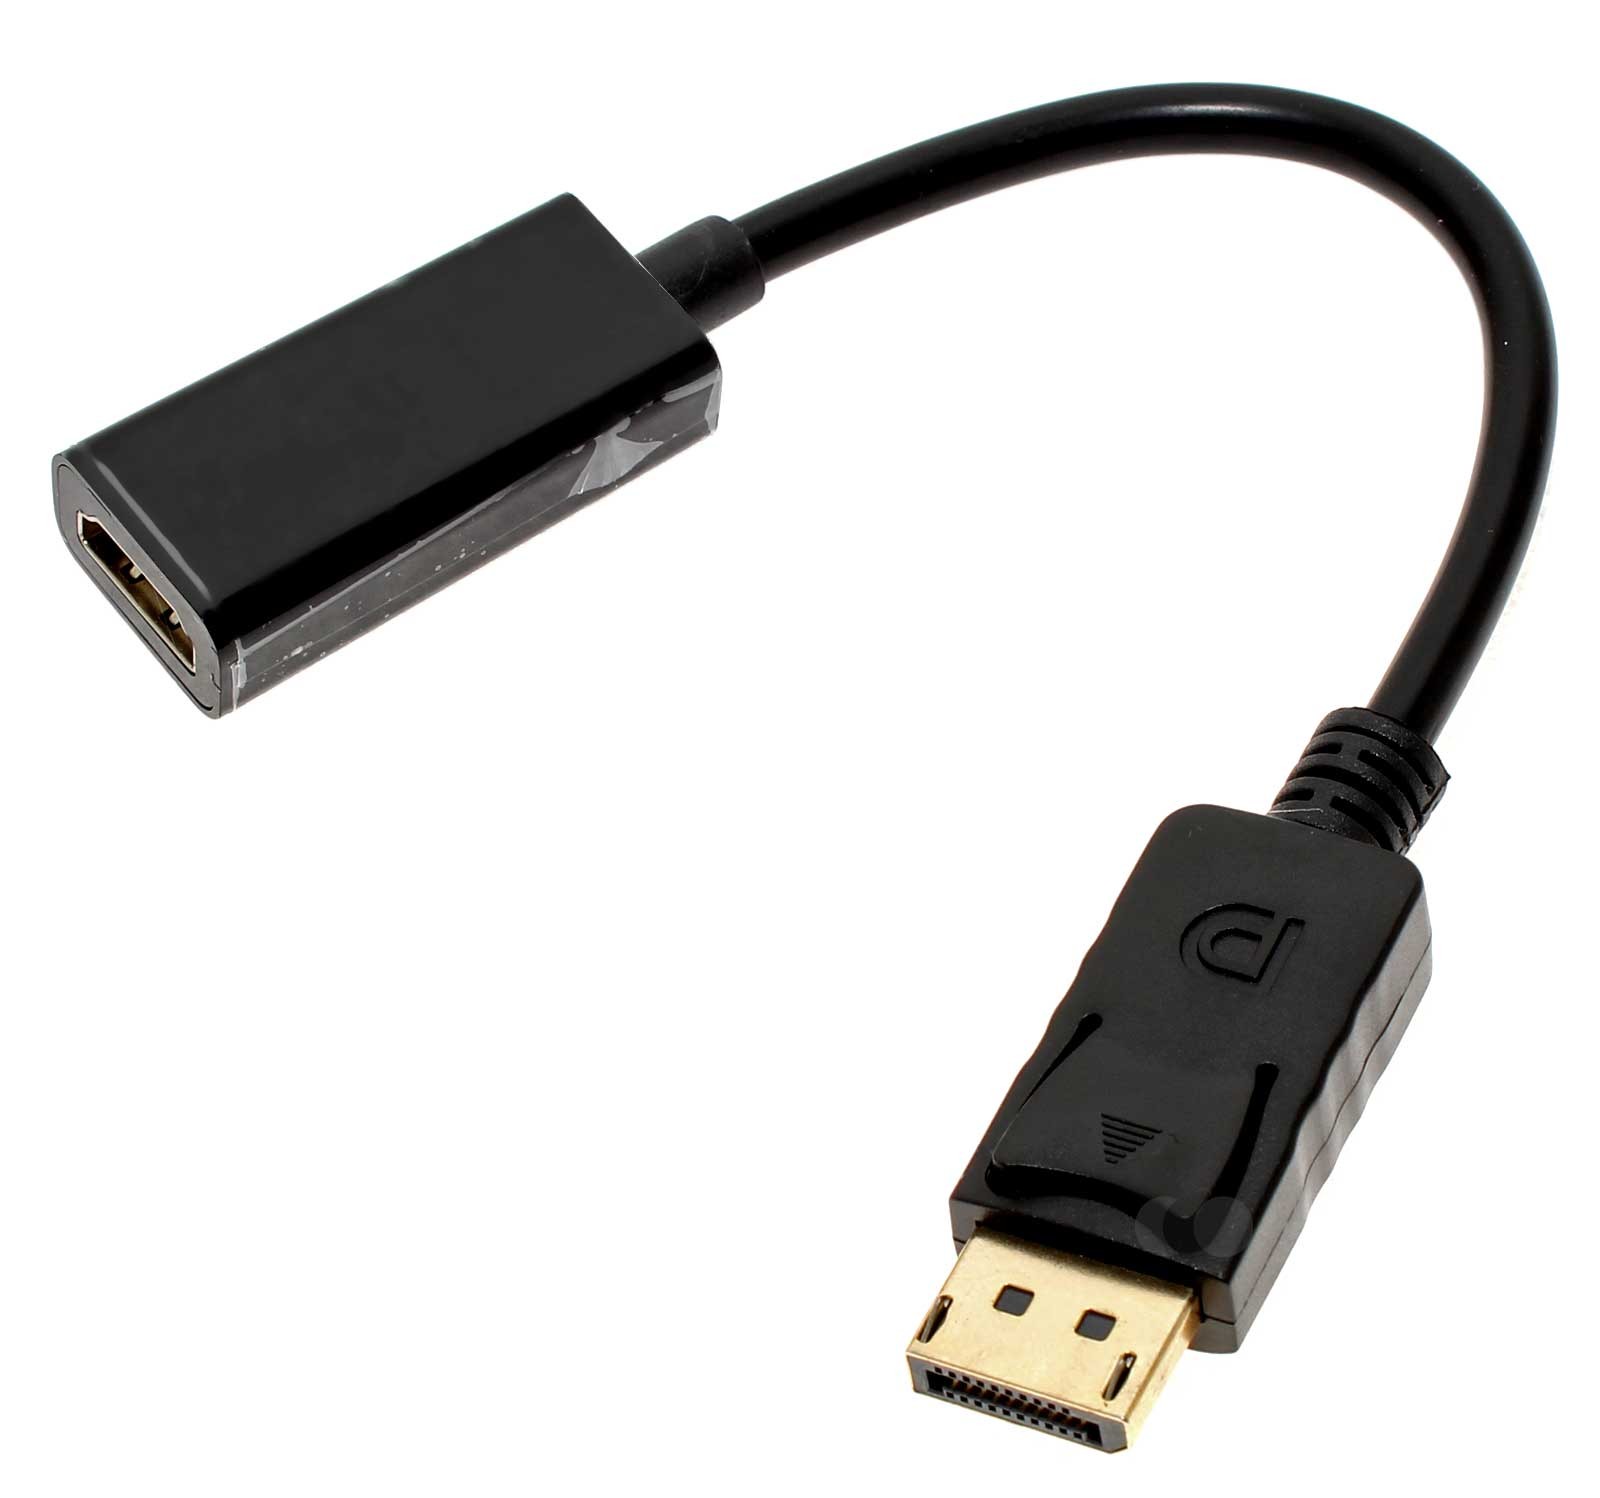 Adapter von Displayport (männlich) auf HDMI (weiblich) zur digitalen Übertragung von HD Video Inhalten auf den Flatscreen TV oder externen Monitor